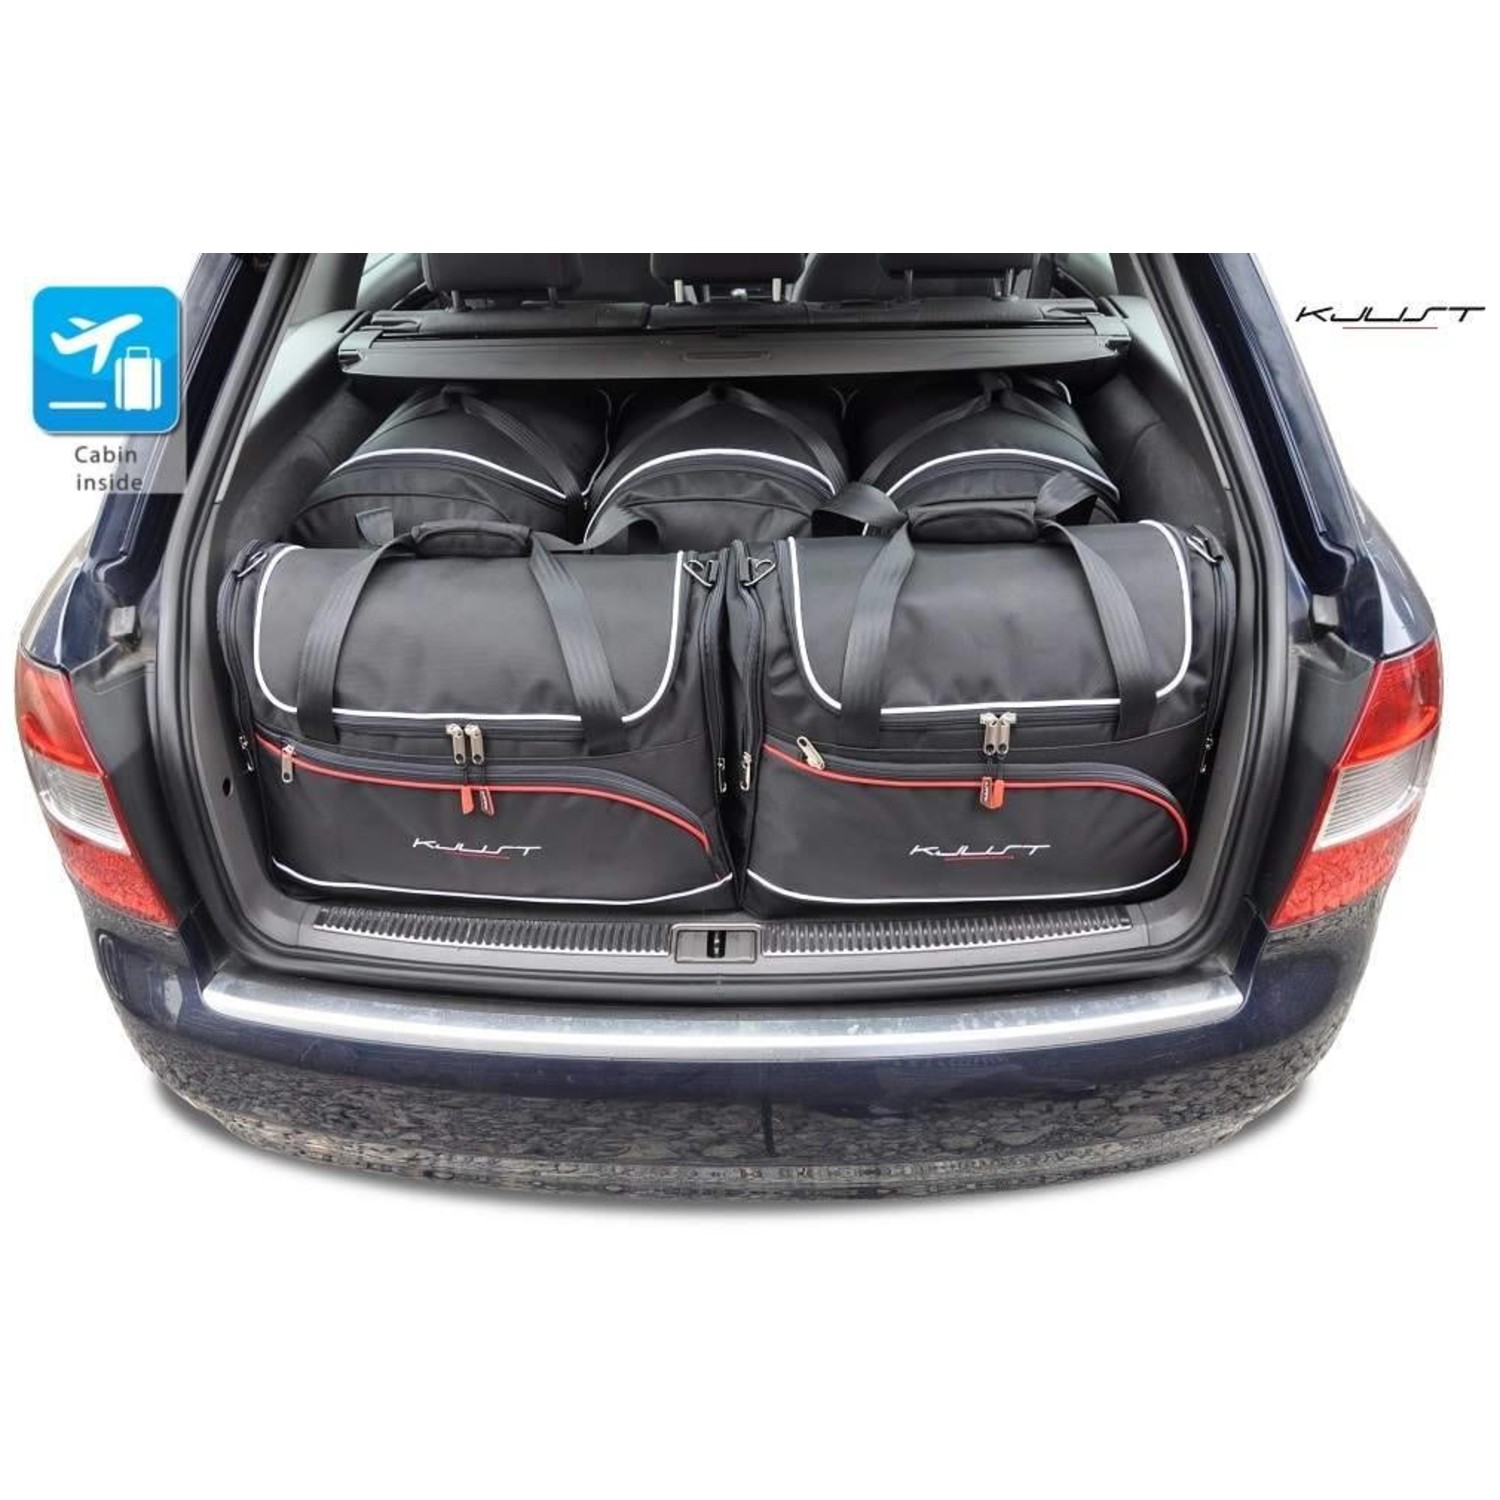 Maßgefertigtes Reisetaschen Set für Audi A4 Avant B6 - Maluch Premium  Autozubehör